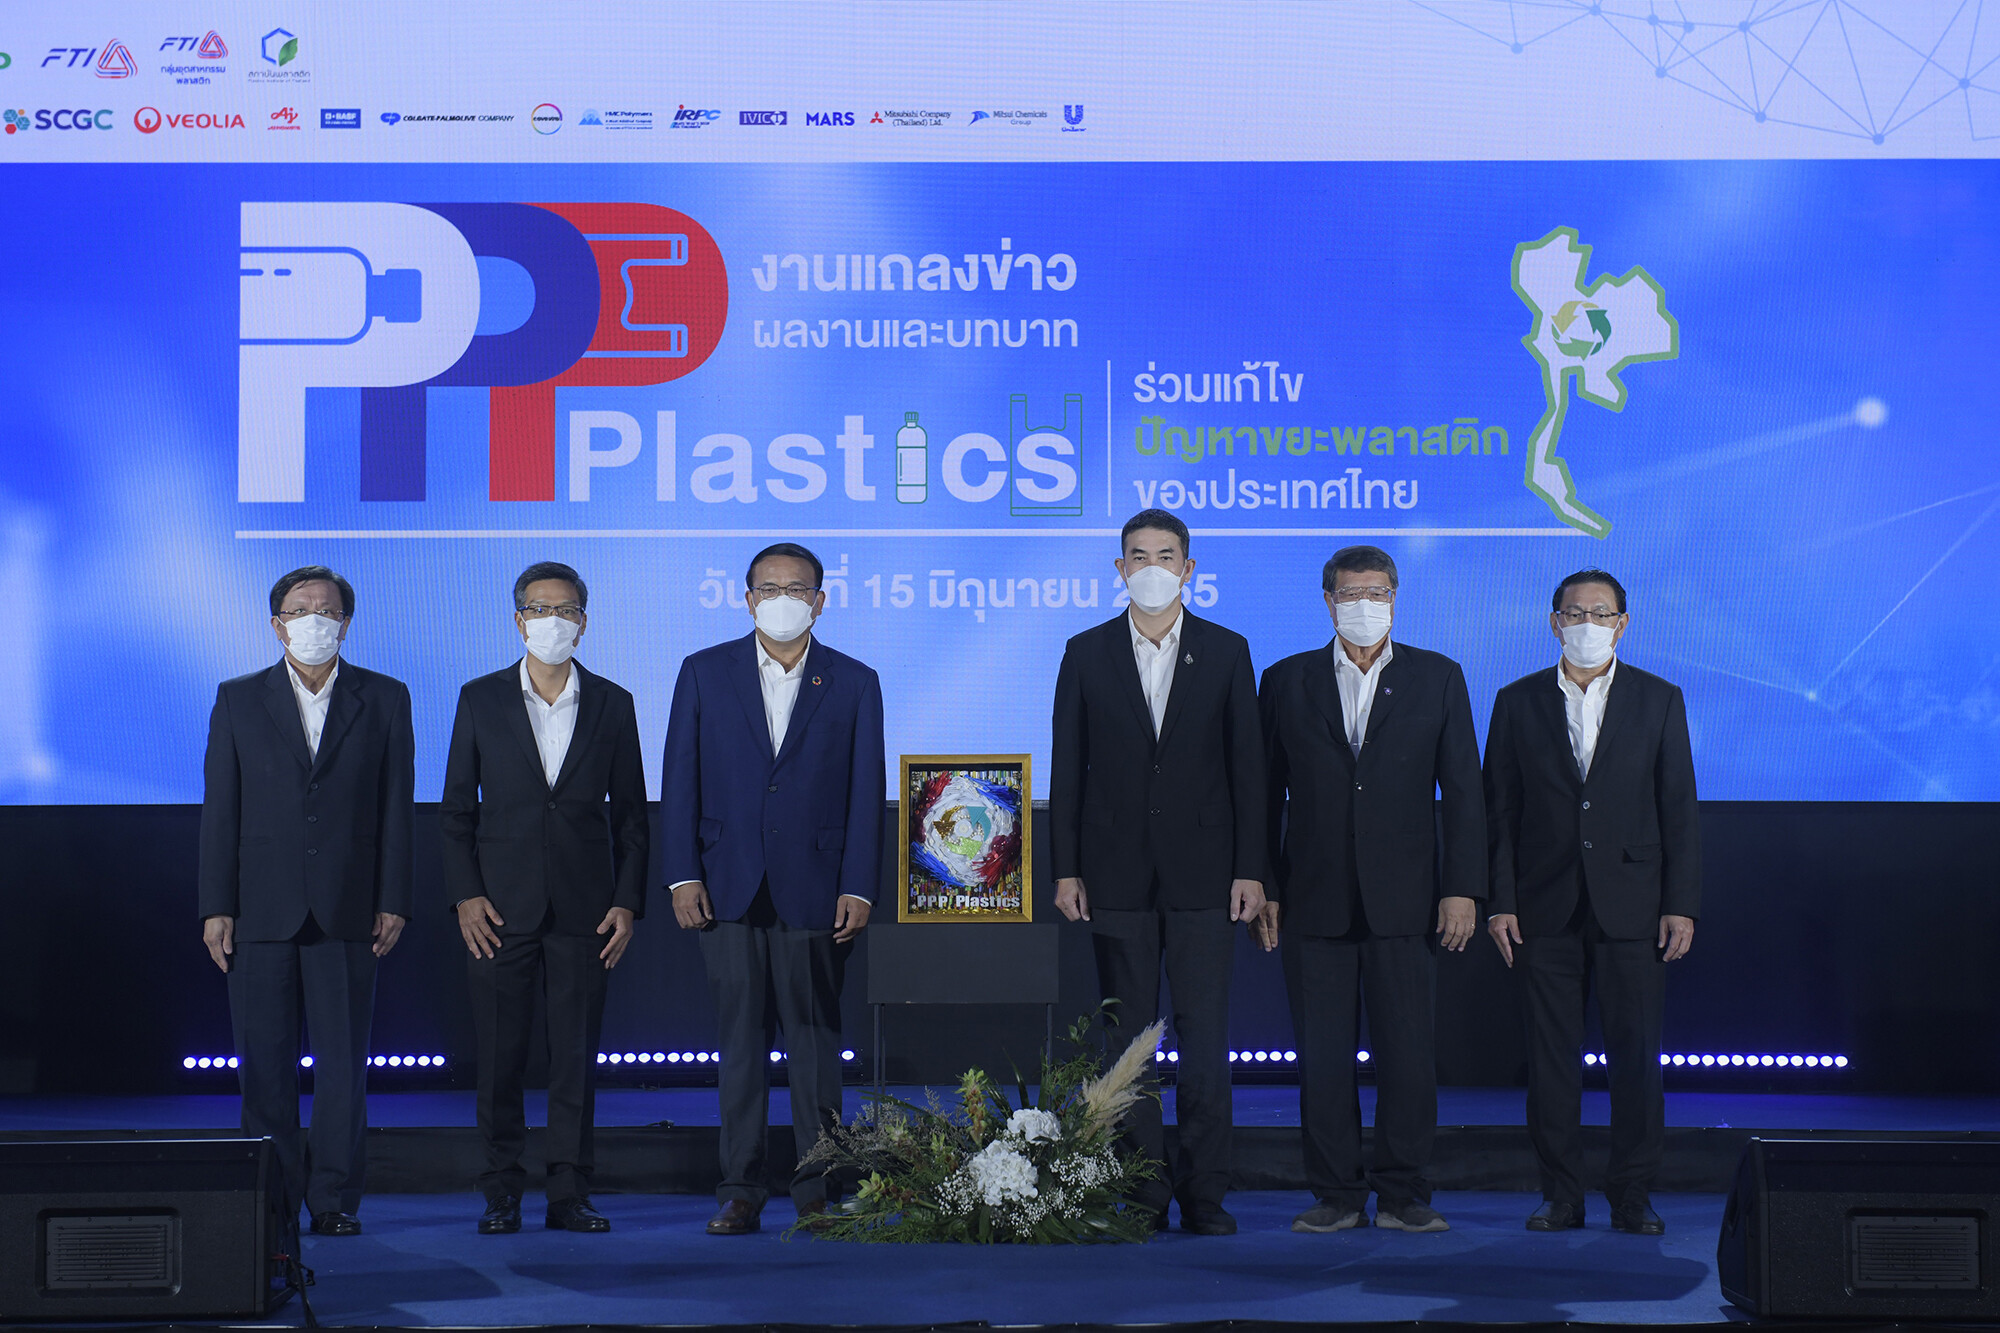 PPP Plastics ขับเคลื่อนโรดแมปแก้ปัญหาขยะพลาสติก อวดผลงาน 5 โมเดลต้นแบบตามหลักการเศรษฐกิจหมุนเวียน